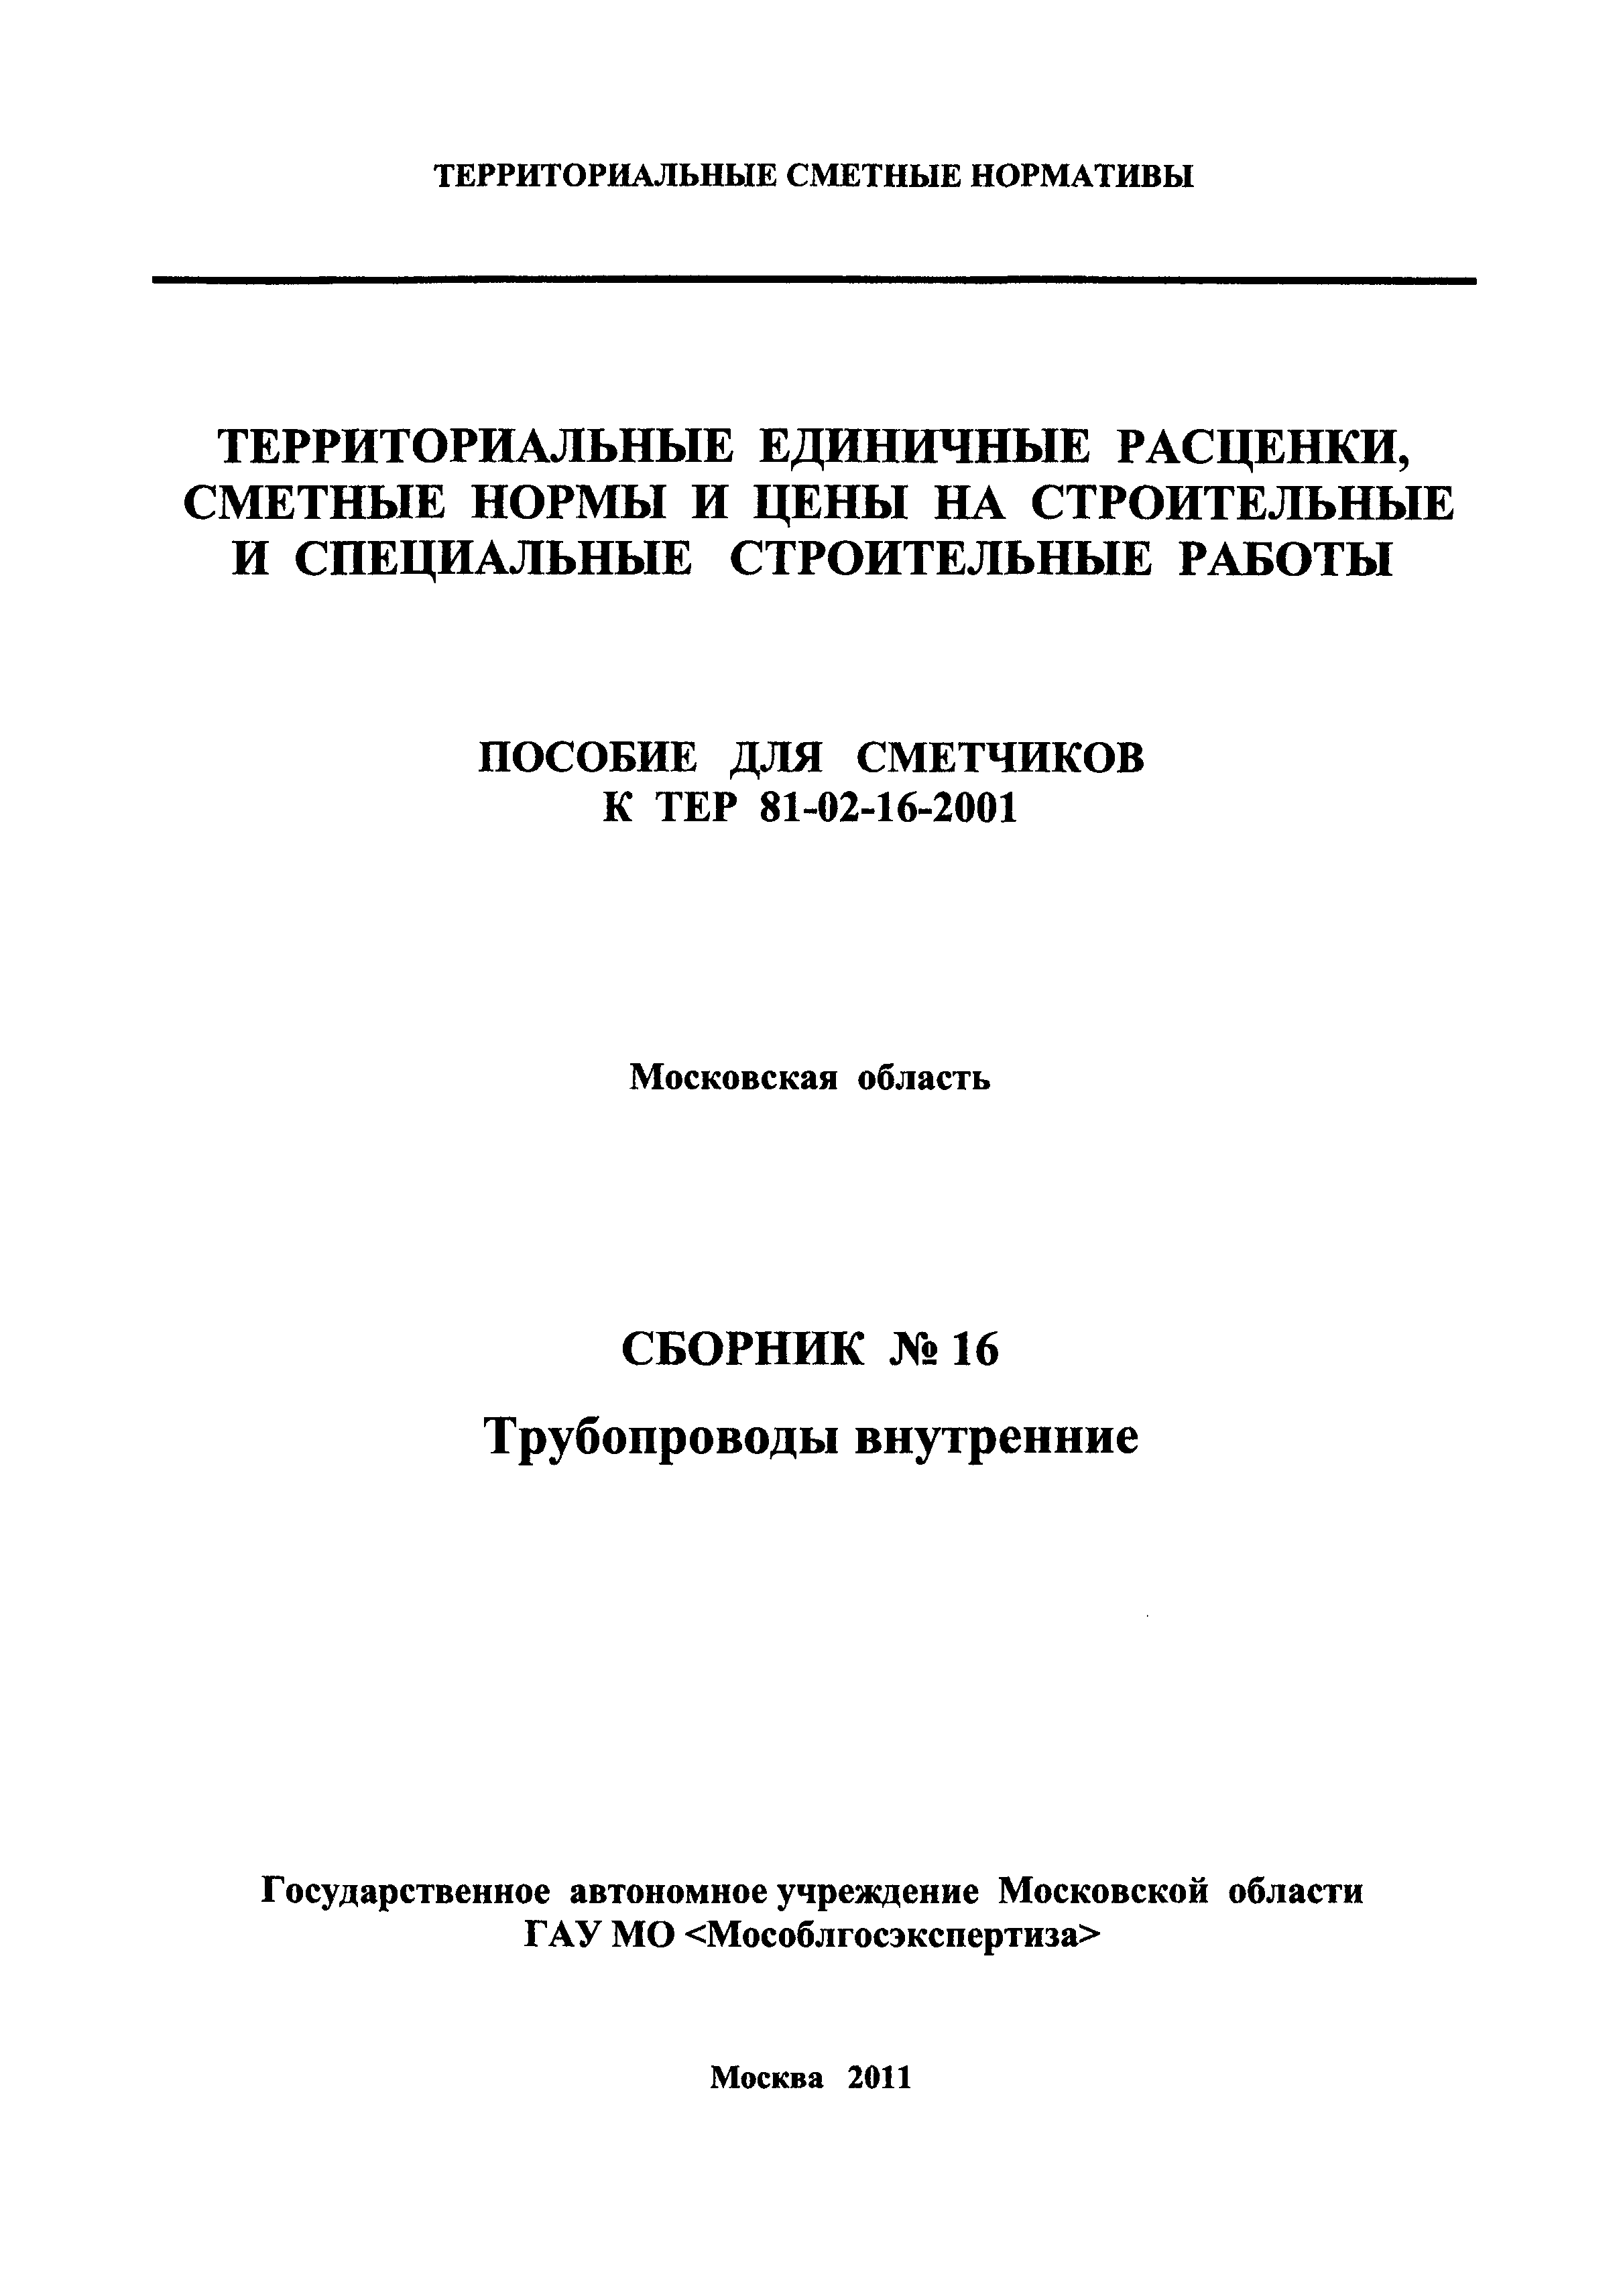 ГЭСНПиТЕР 2001-16 Московской области